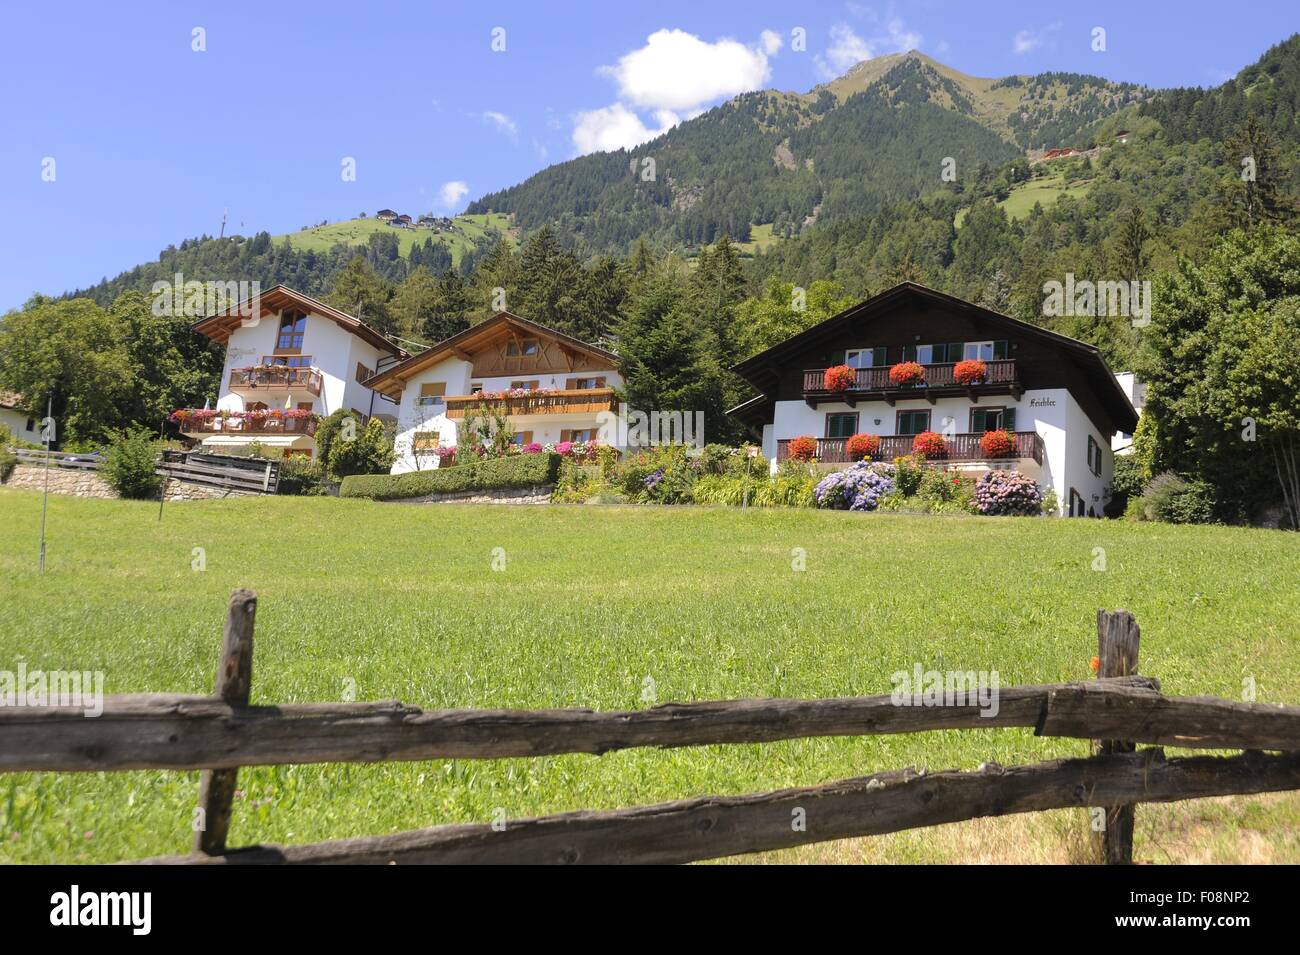 Alto Adige (Italia settentrionale), case tipiche del paese di Tirolo presso Merano Foto Stock